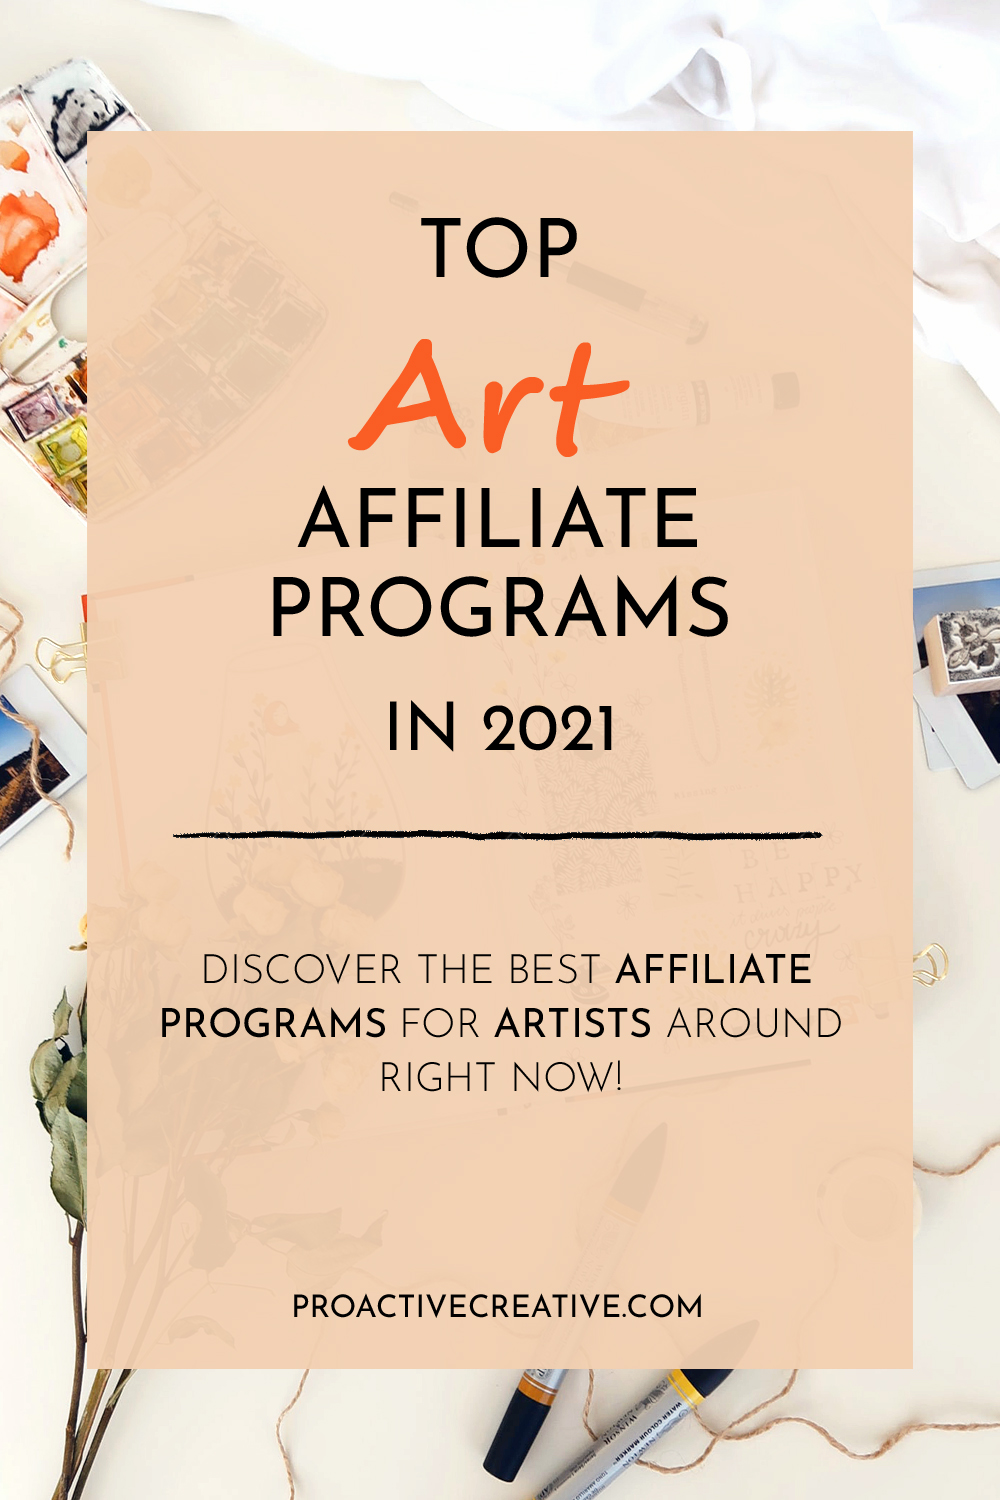 Top Art Affiliate Programs